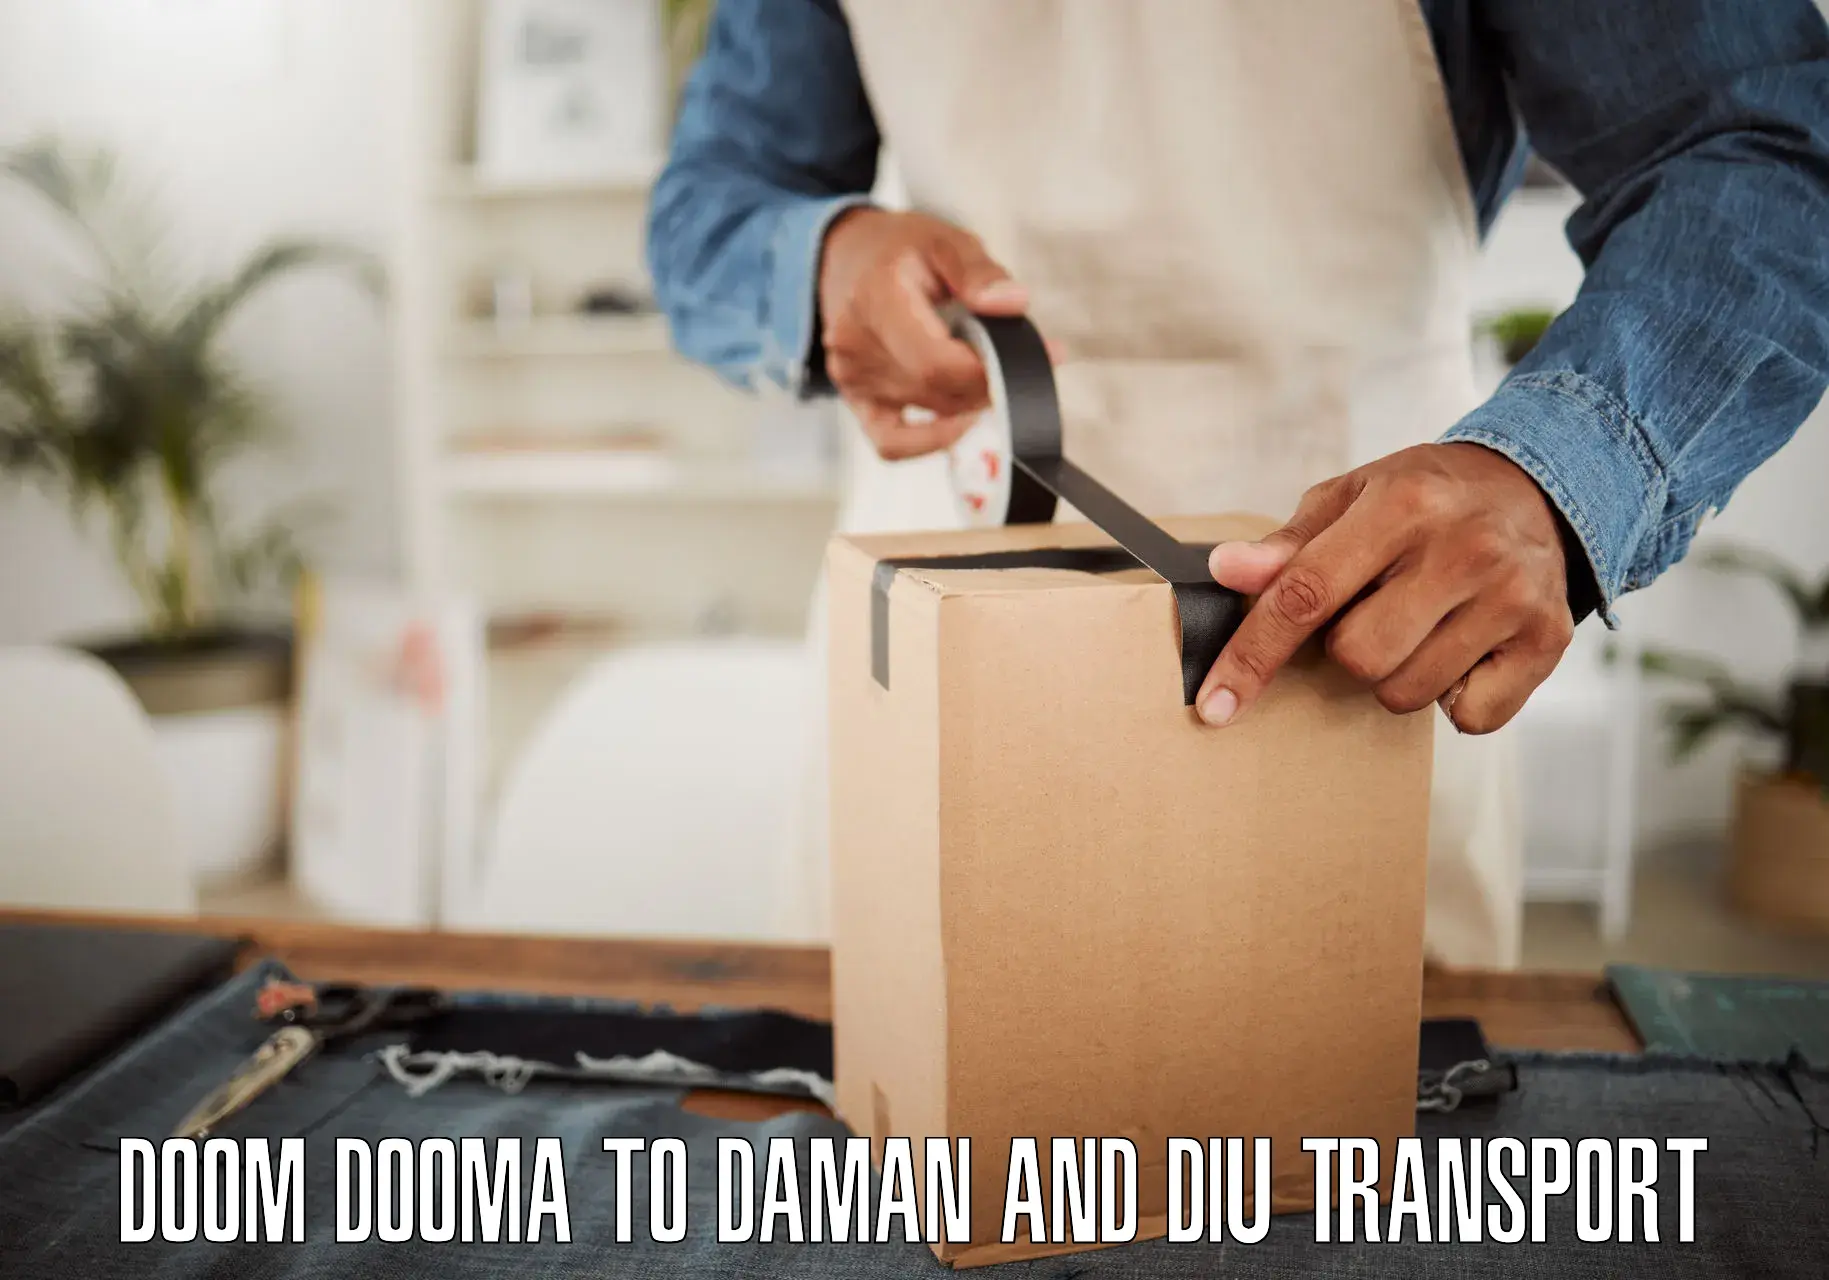 Express transport services Doom Dooma to Daman and Diu